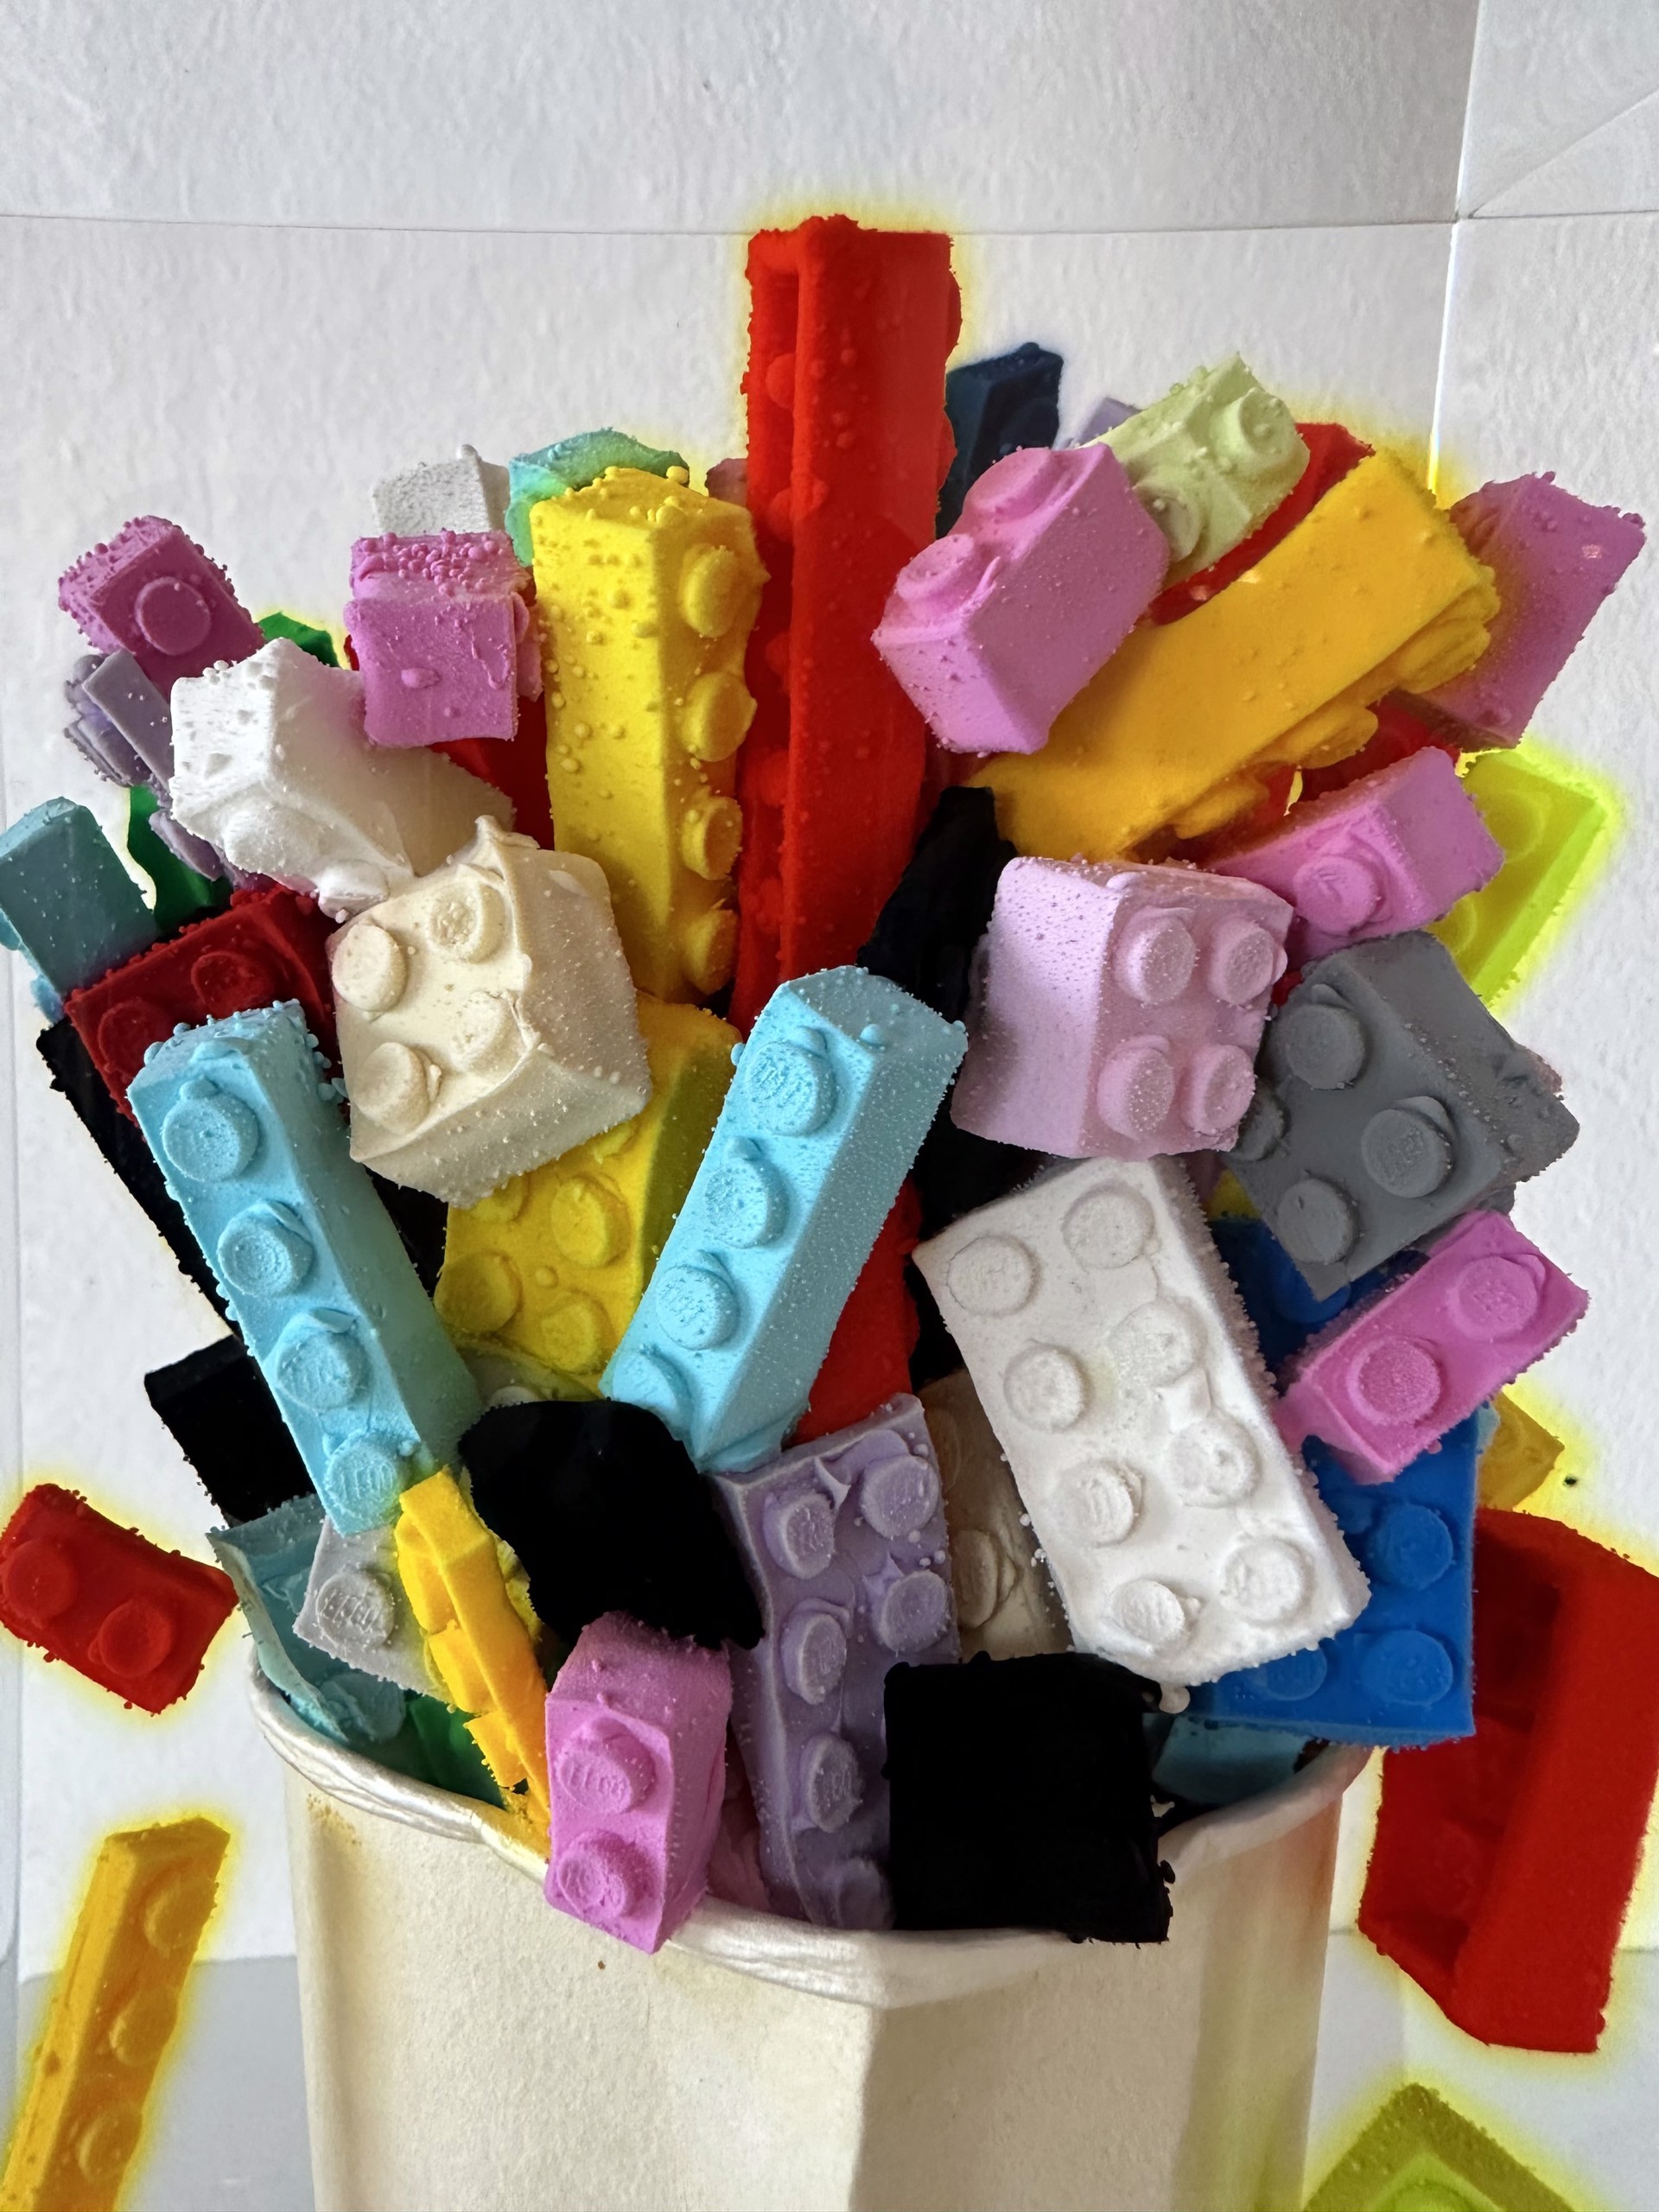 Lego - Cino by Helder Batista